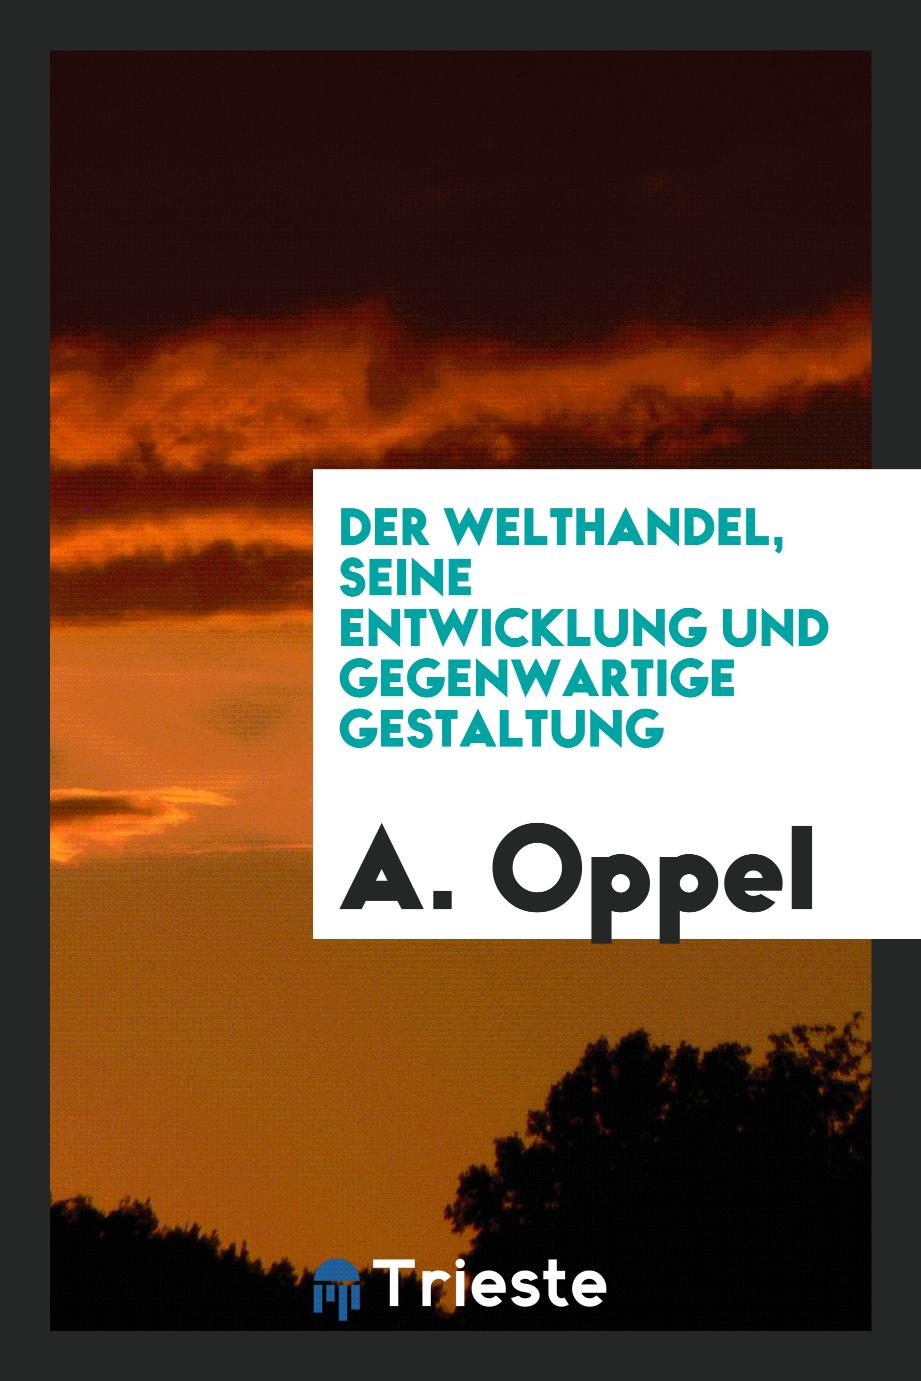 A. Oppel - Der Welthandel, seine Entwicklung und gegenwartige Gestaltung